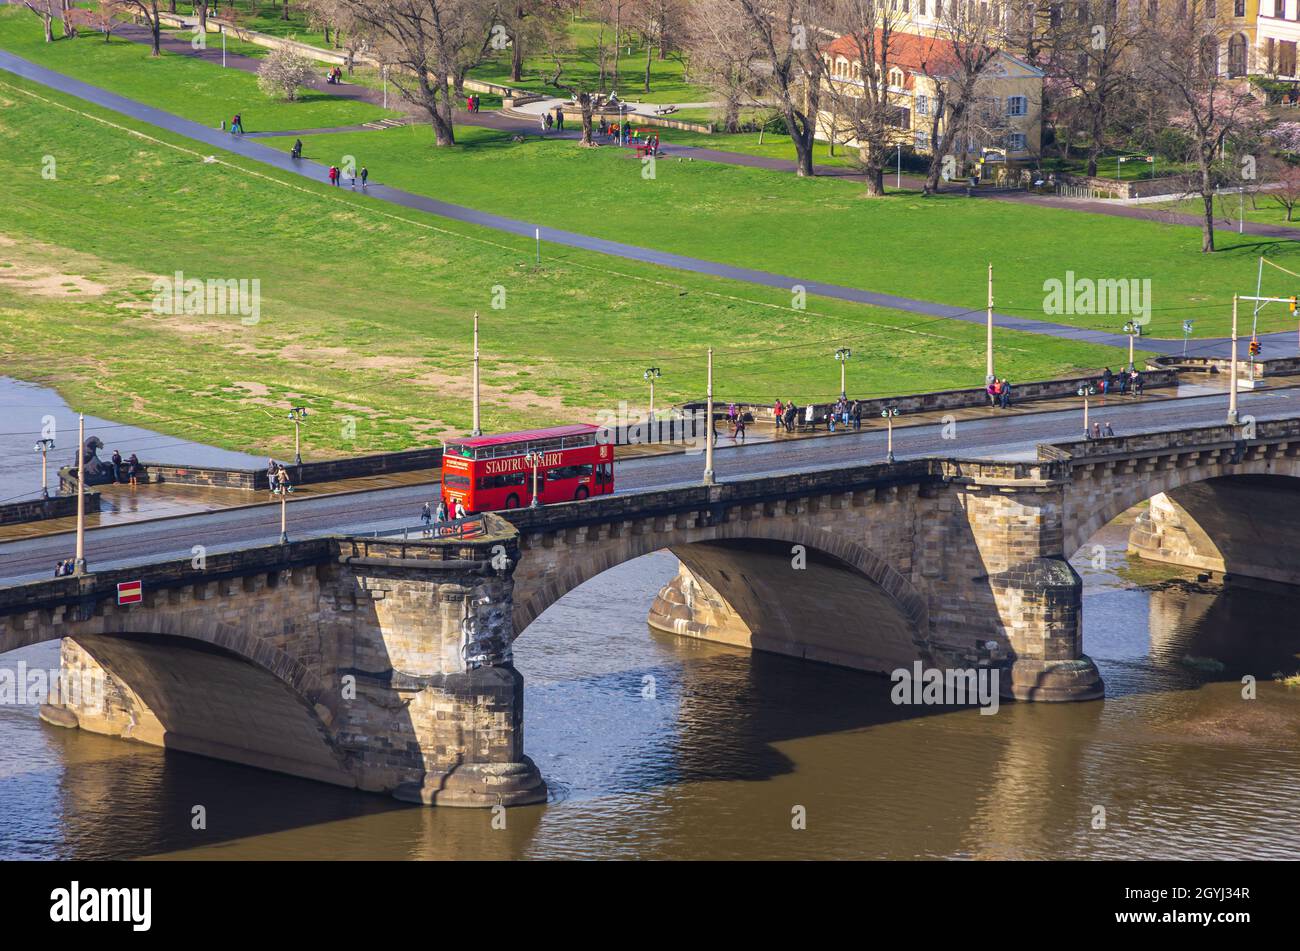 Dresde, Sajonia, Alemania: Un autobús rojo de dos pisos de una compañía turística local cruza el Puente de Augusto. Foto de stock